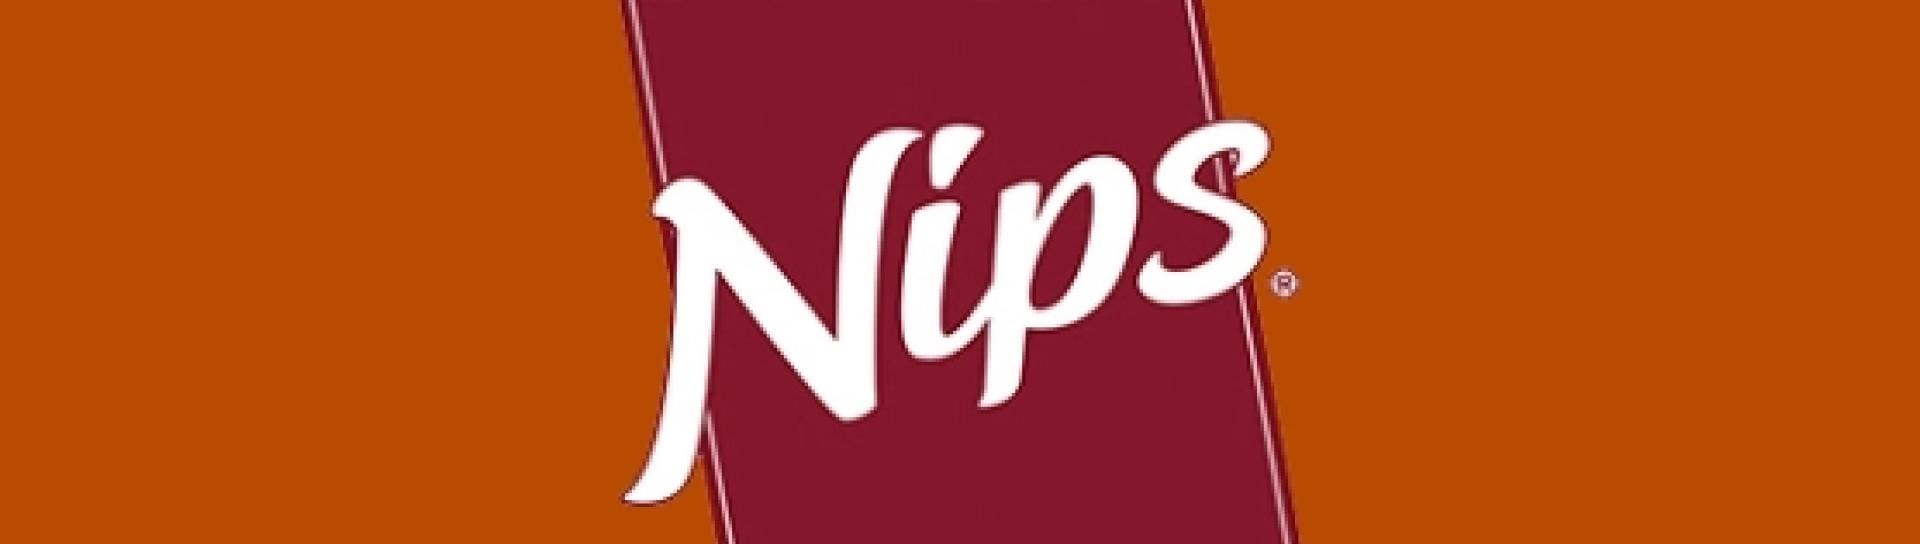 Nips